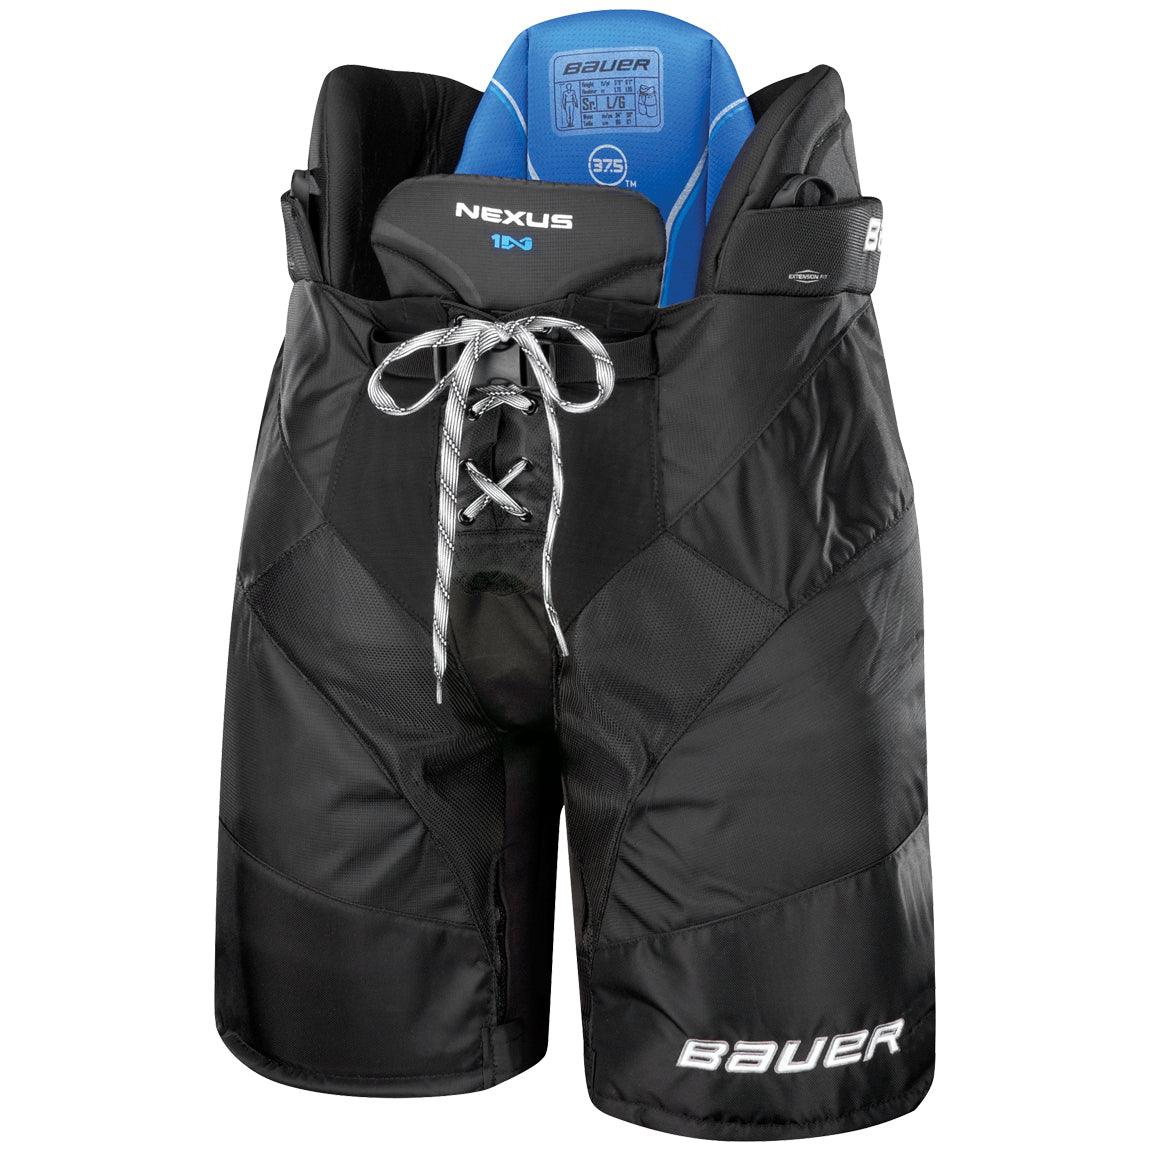 Vapor X900 Hockey Pants - Senior - Sports Excellence